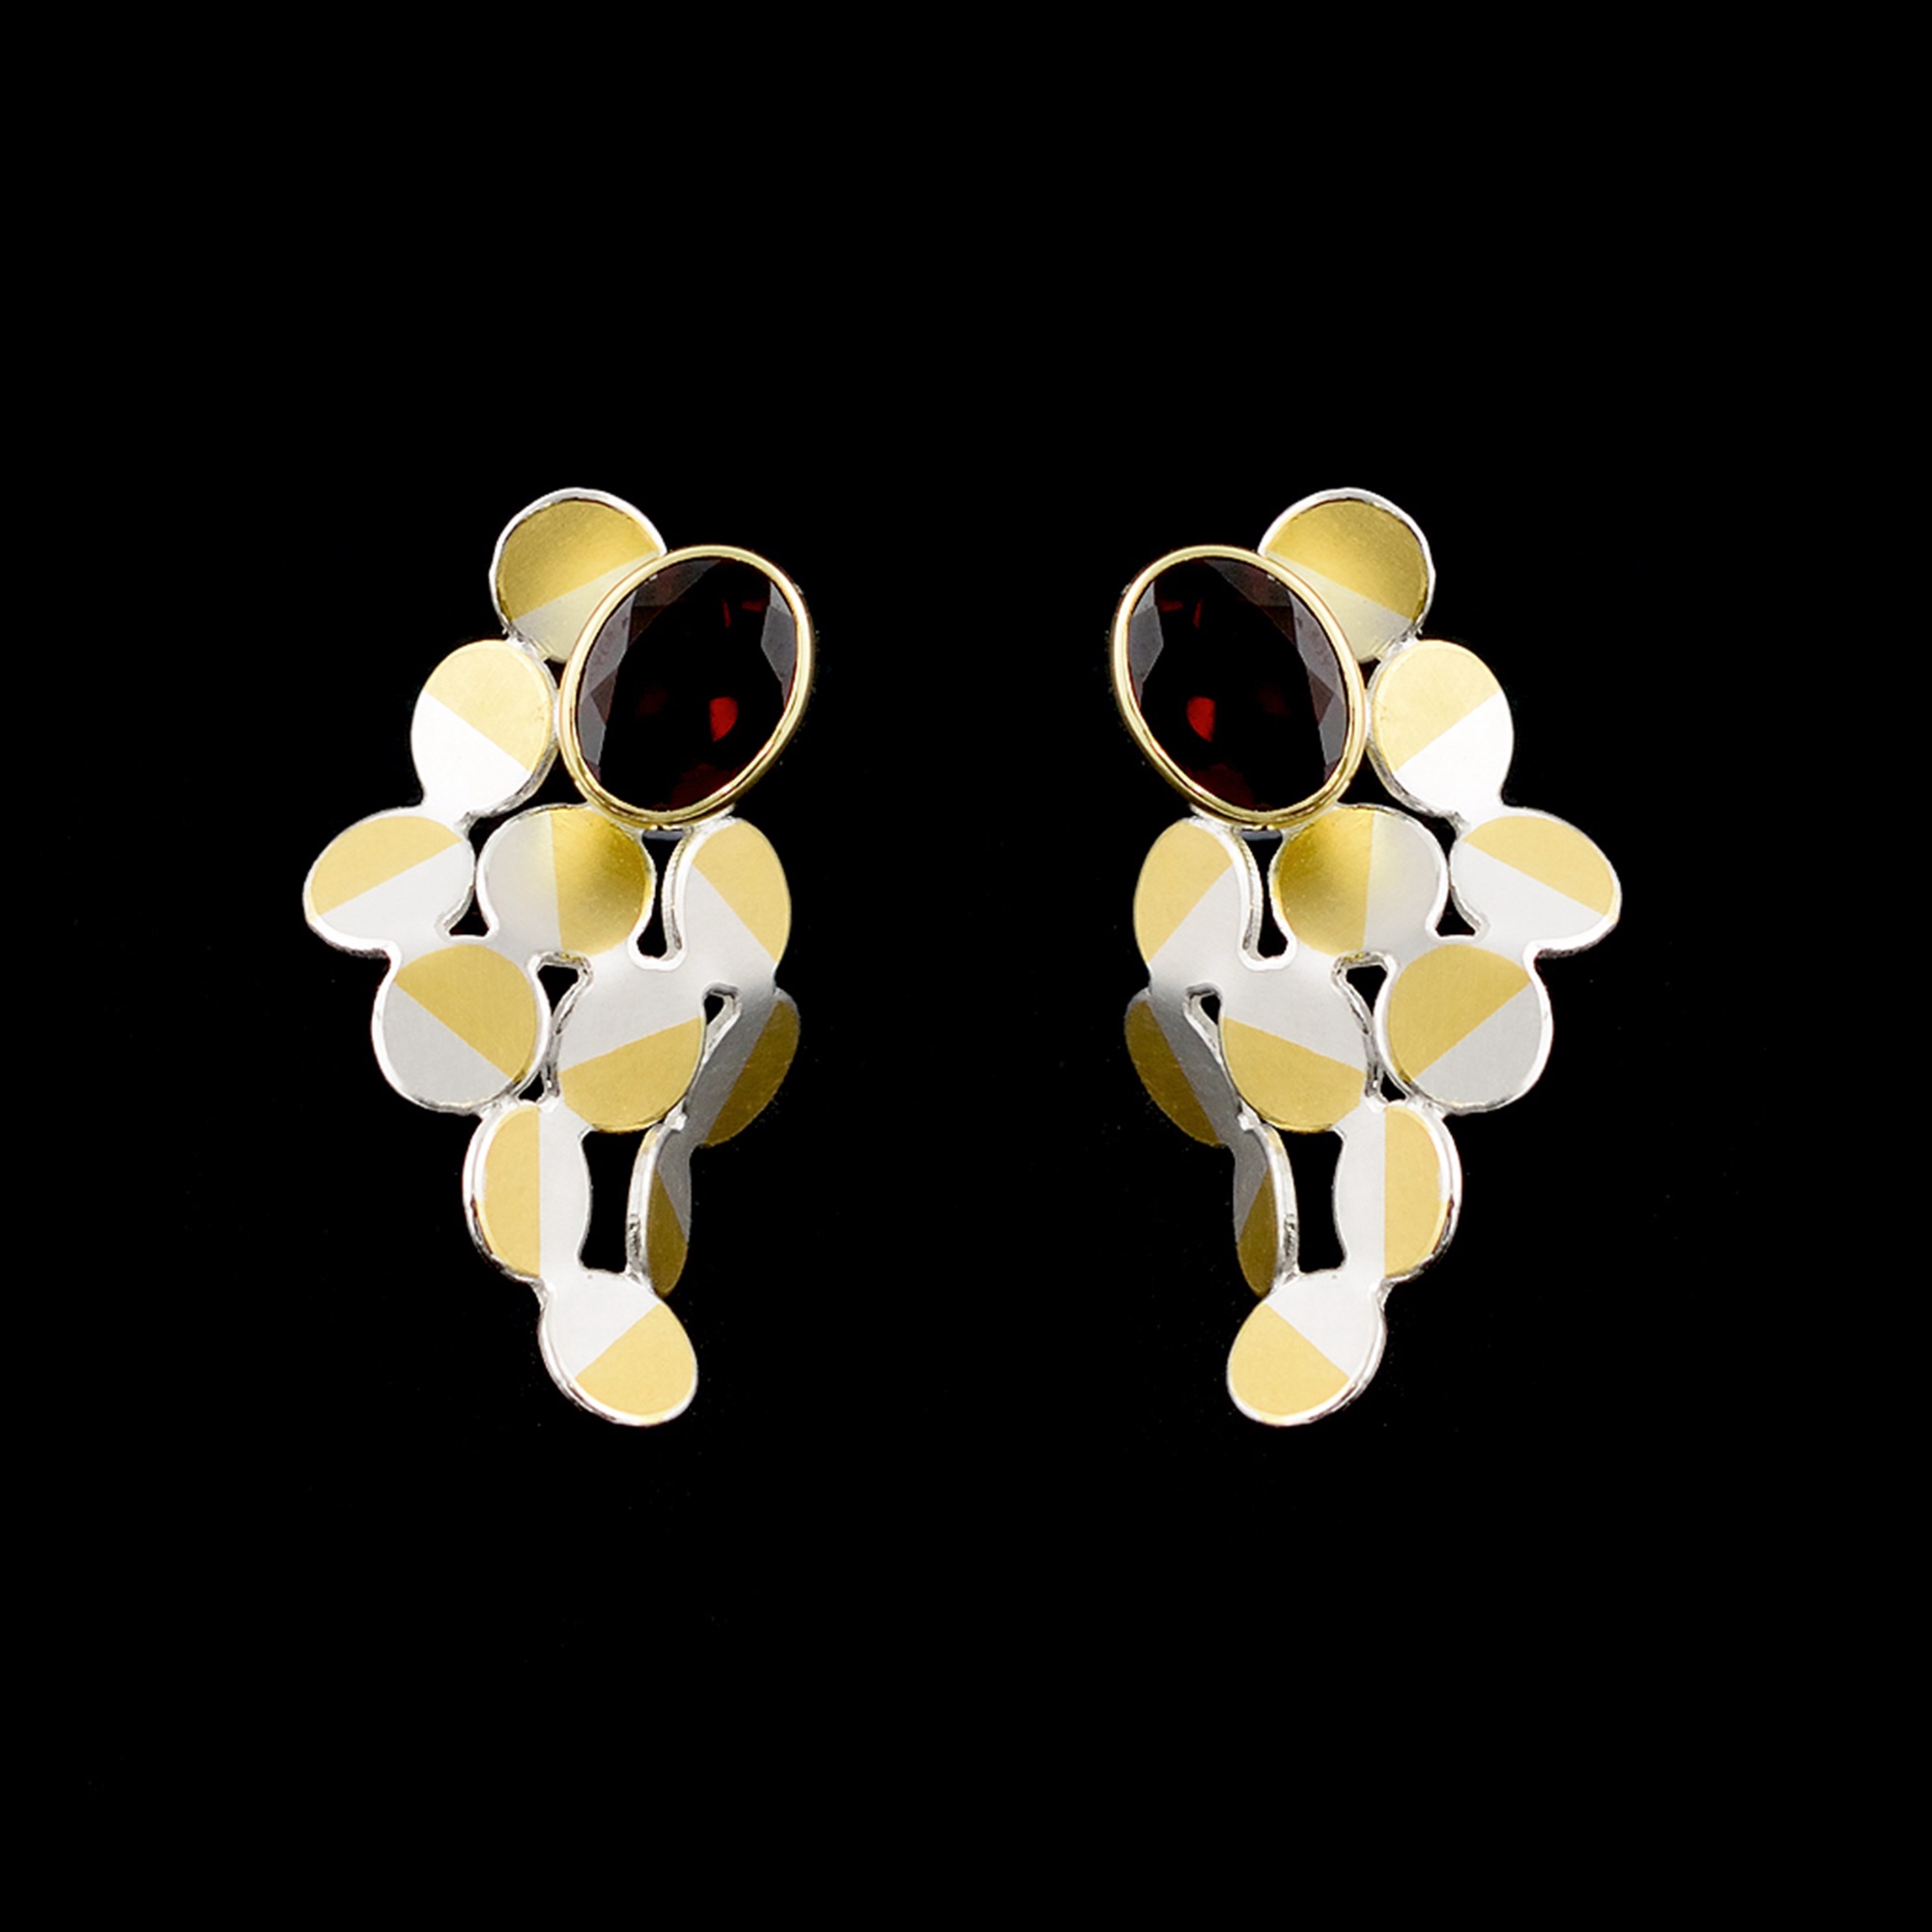 Rhombus garnet earrings